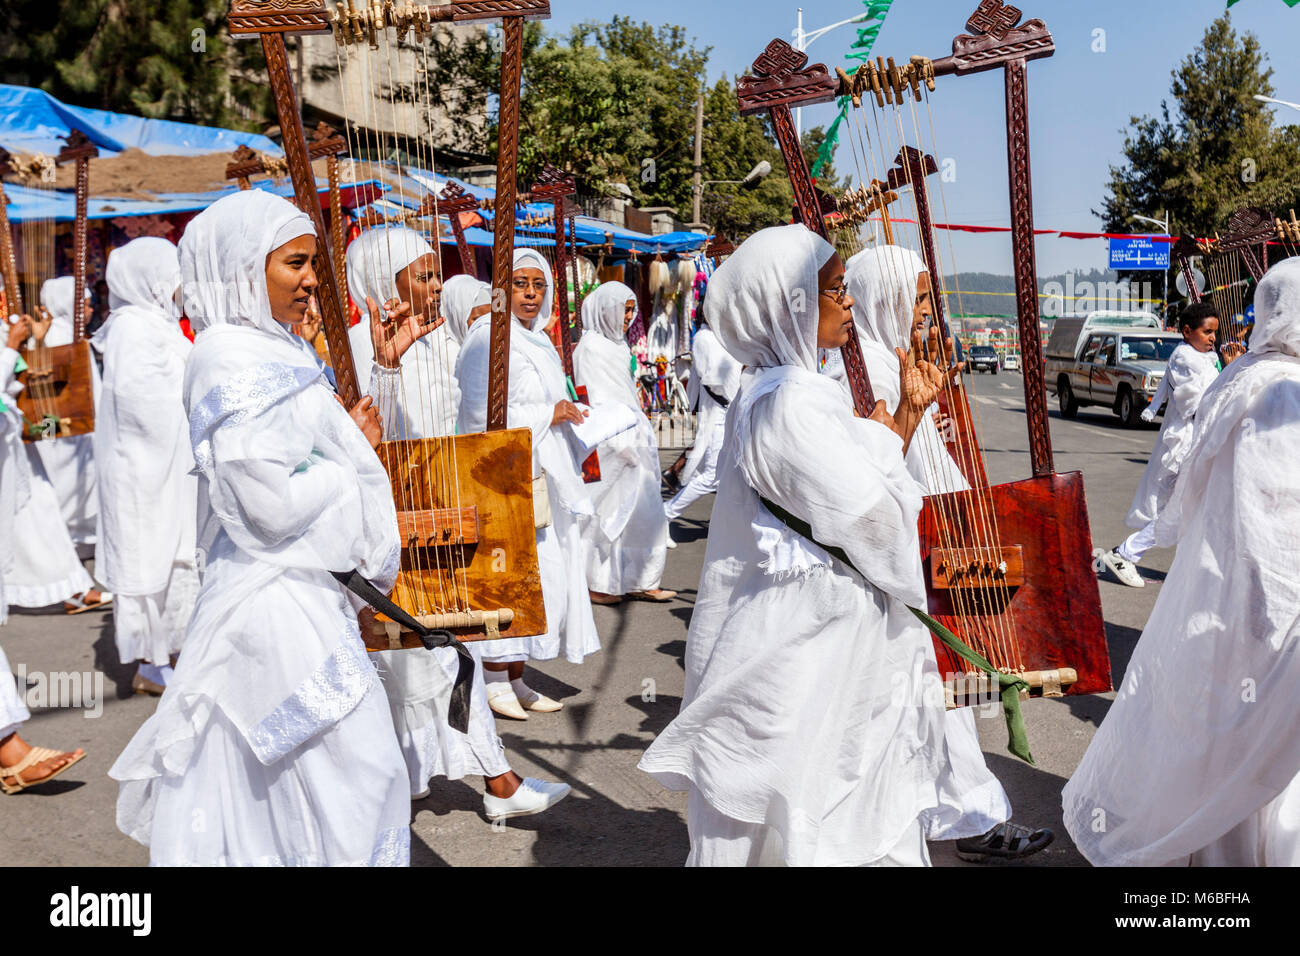 Une rue Procession de chrétiens orthodoxes Éthiopiens au cours de l'Assemblée Timkat (Epiphanie) Célébrations, Addis Abeba, Ethiopie Banque D'Images